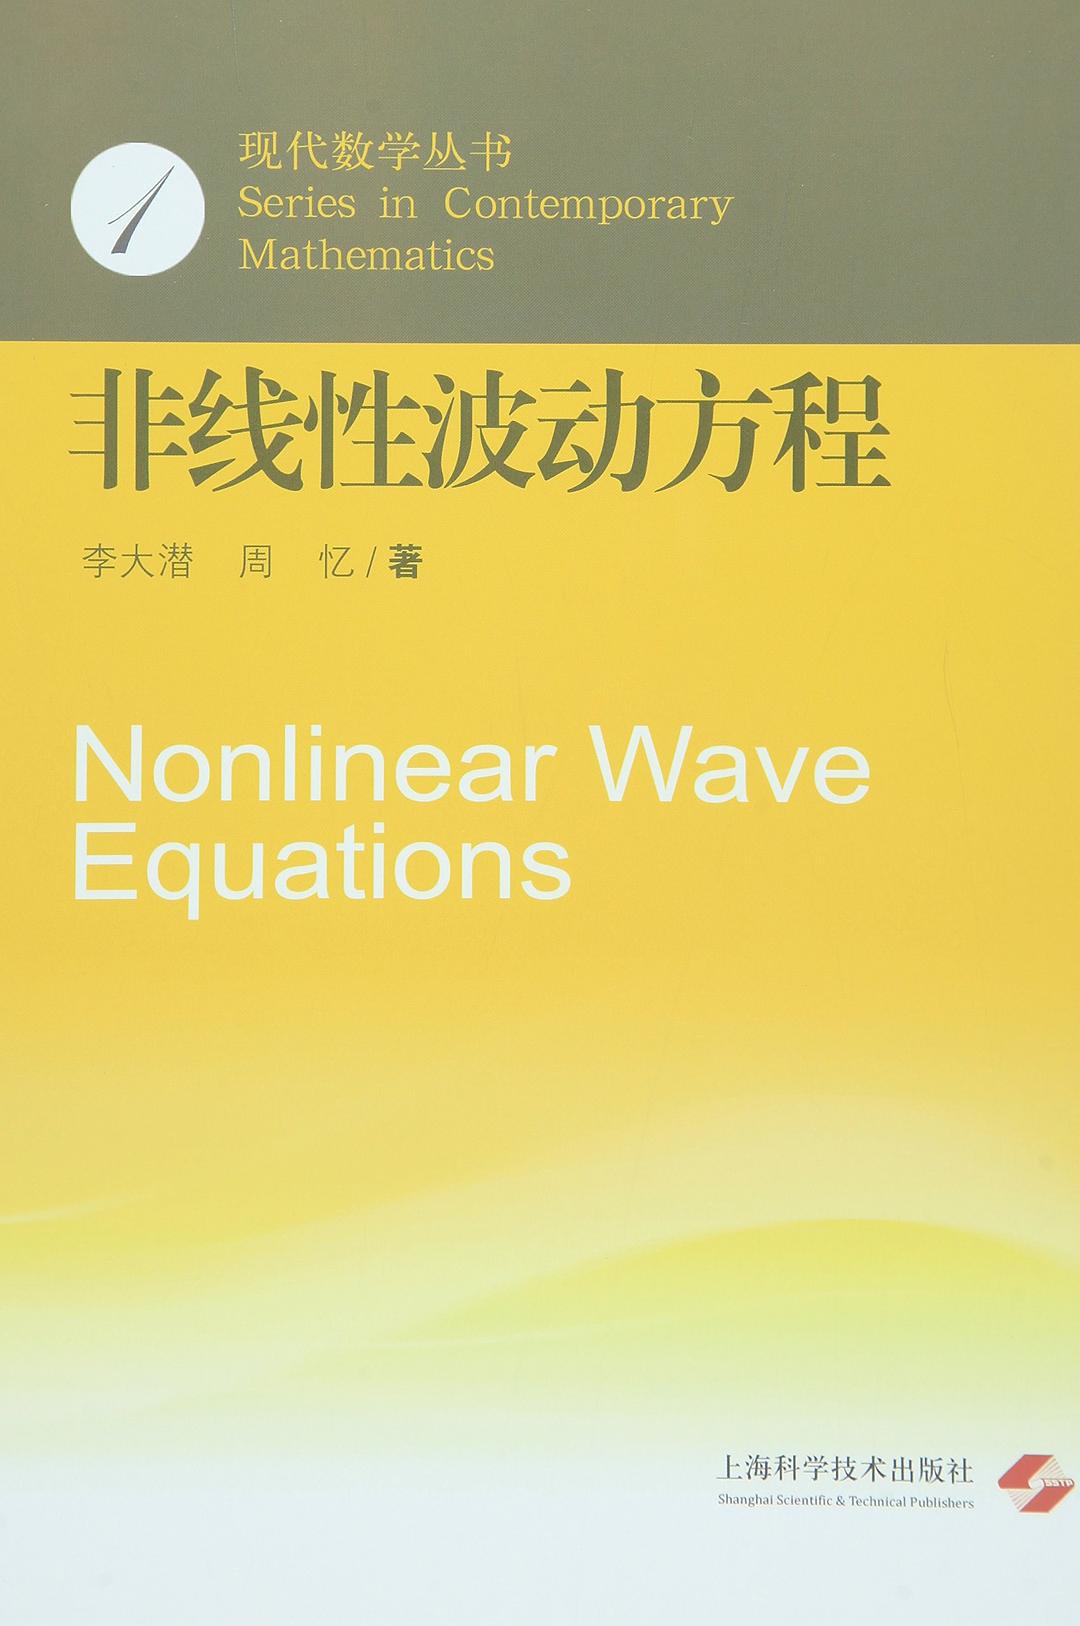 非線性波動方程(上海世紀出版股份有限公司出版書籍)